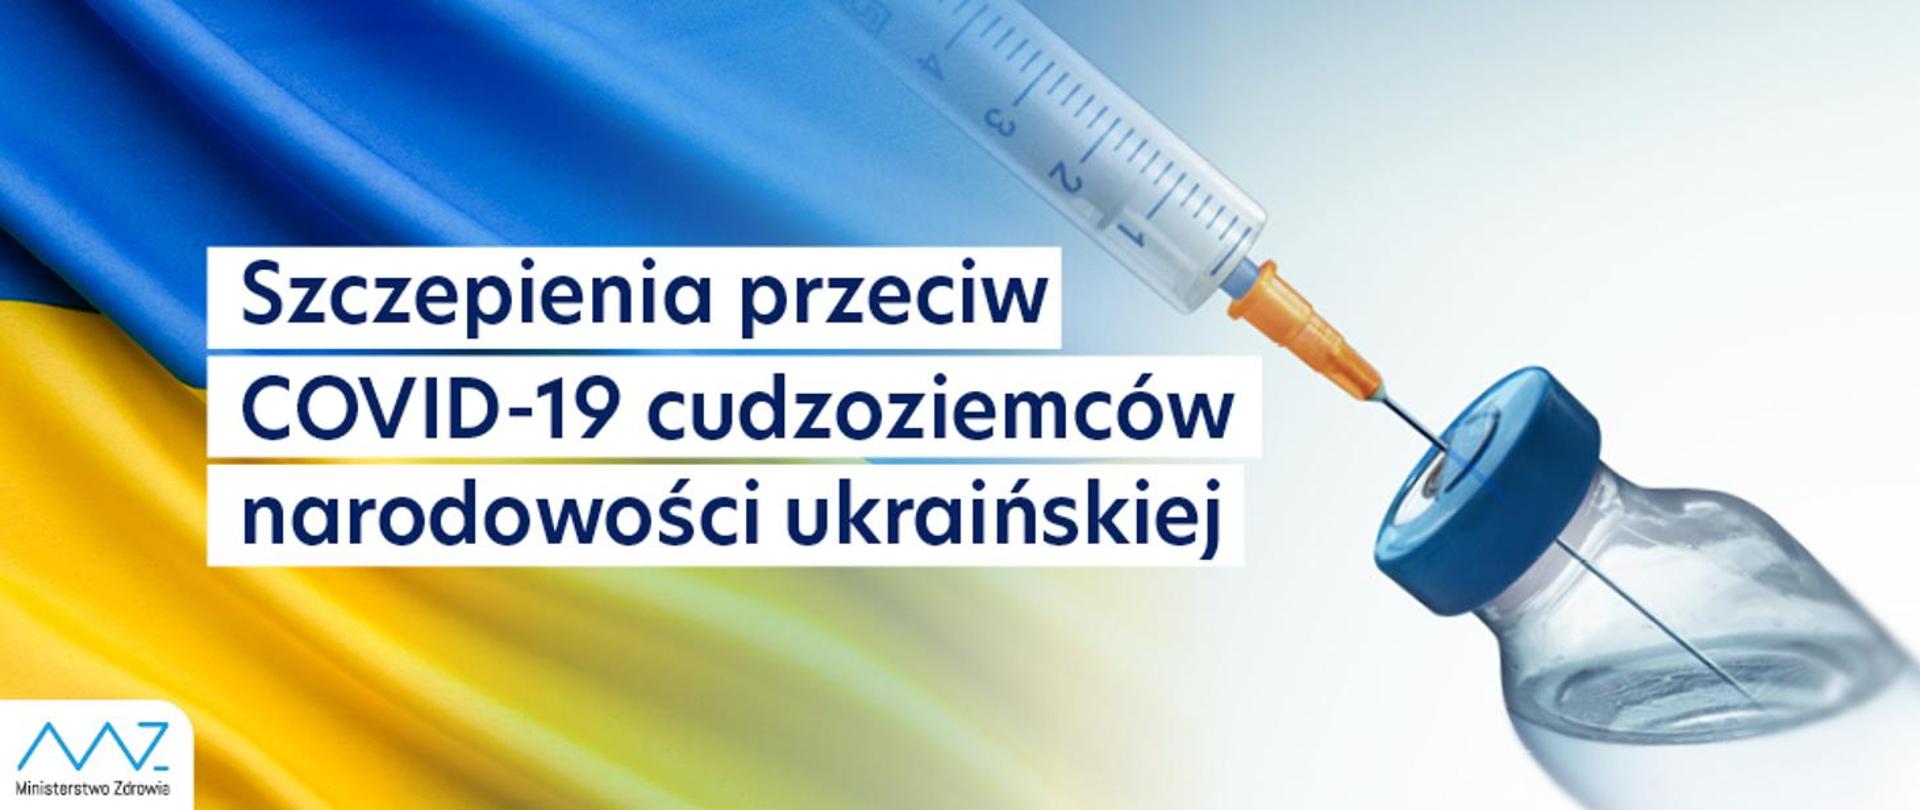 Materiały w języku ukraińskim na temat szczepień przeciw COVID-19